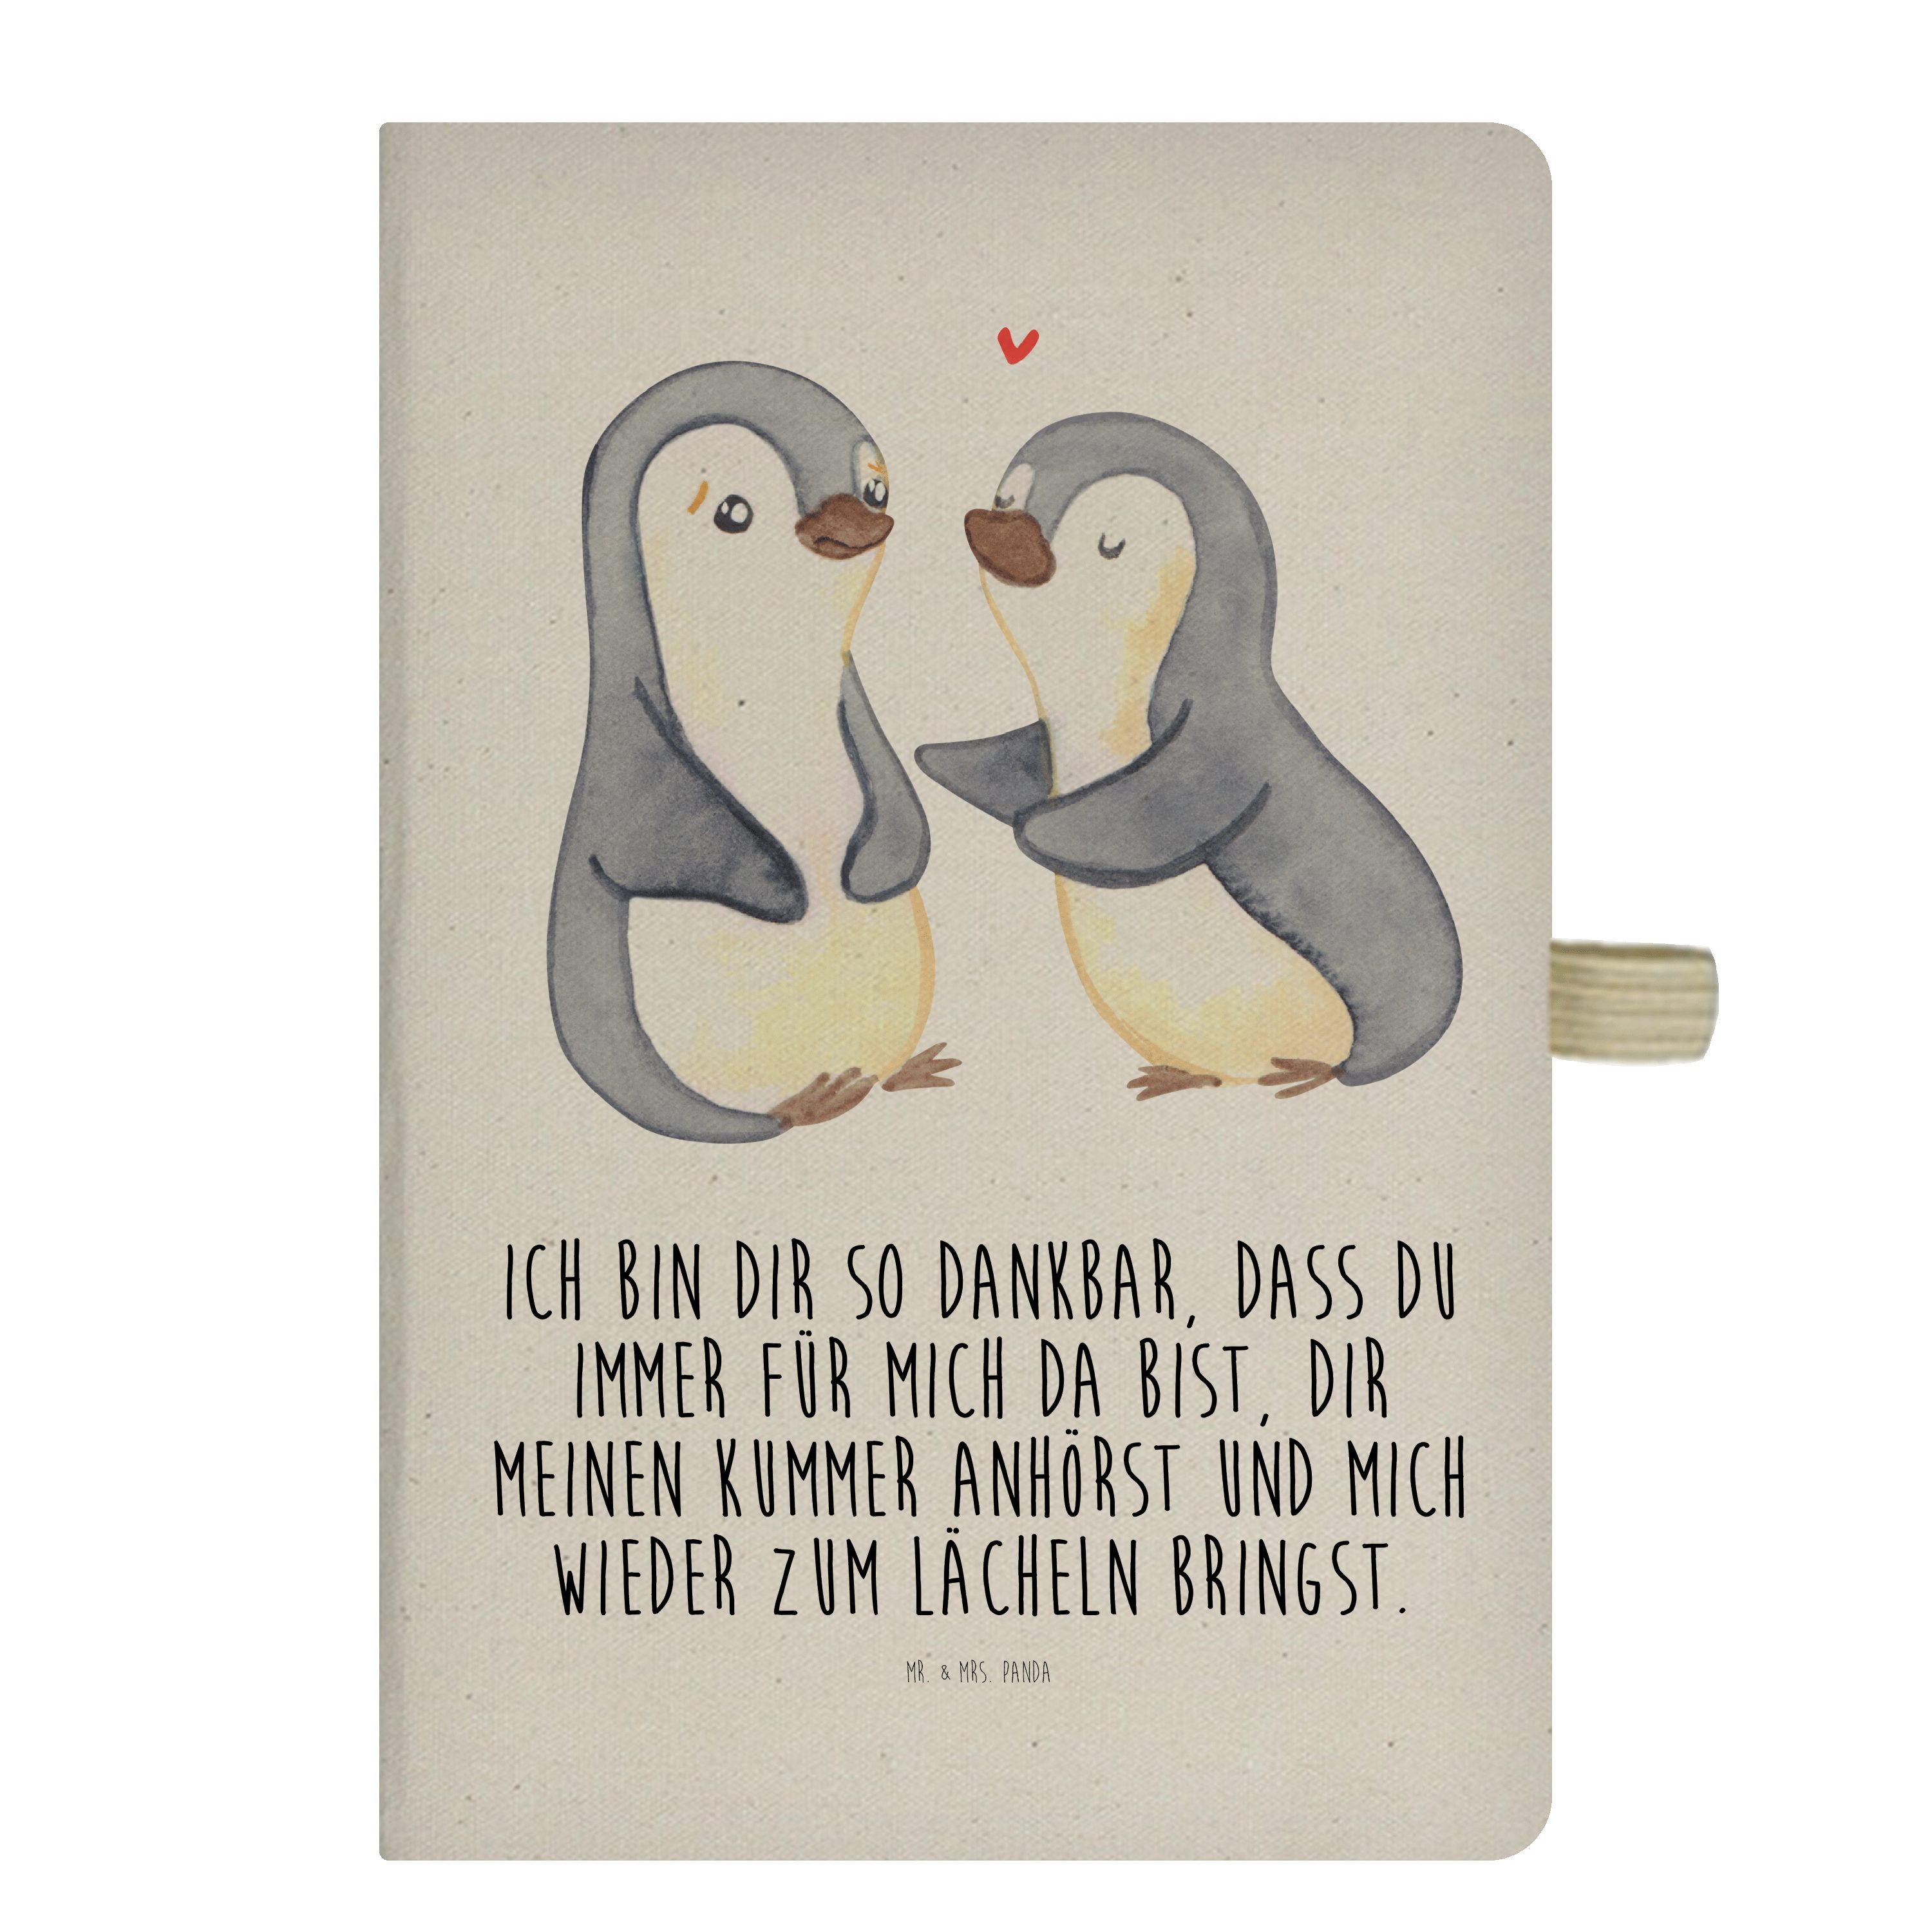 Mr. & Mrs. Panda Notizbuch Pinguine trösten - Transparent - Geschenk, Journal, Skizzenbuch, Tage Mr. & Mrs. Panda